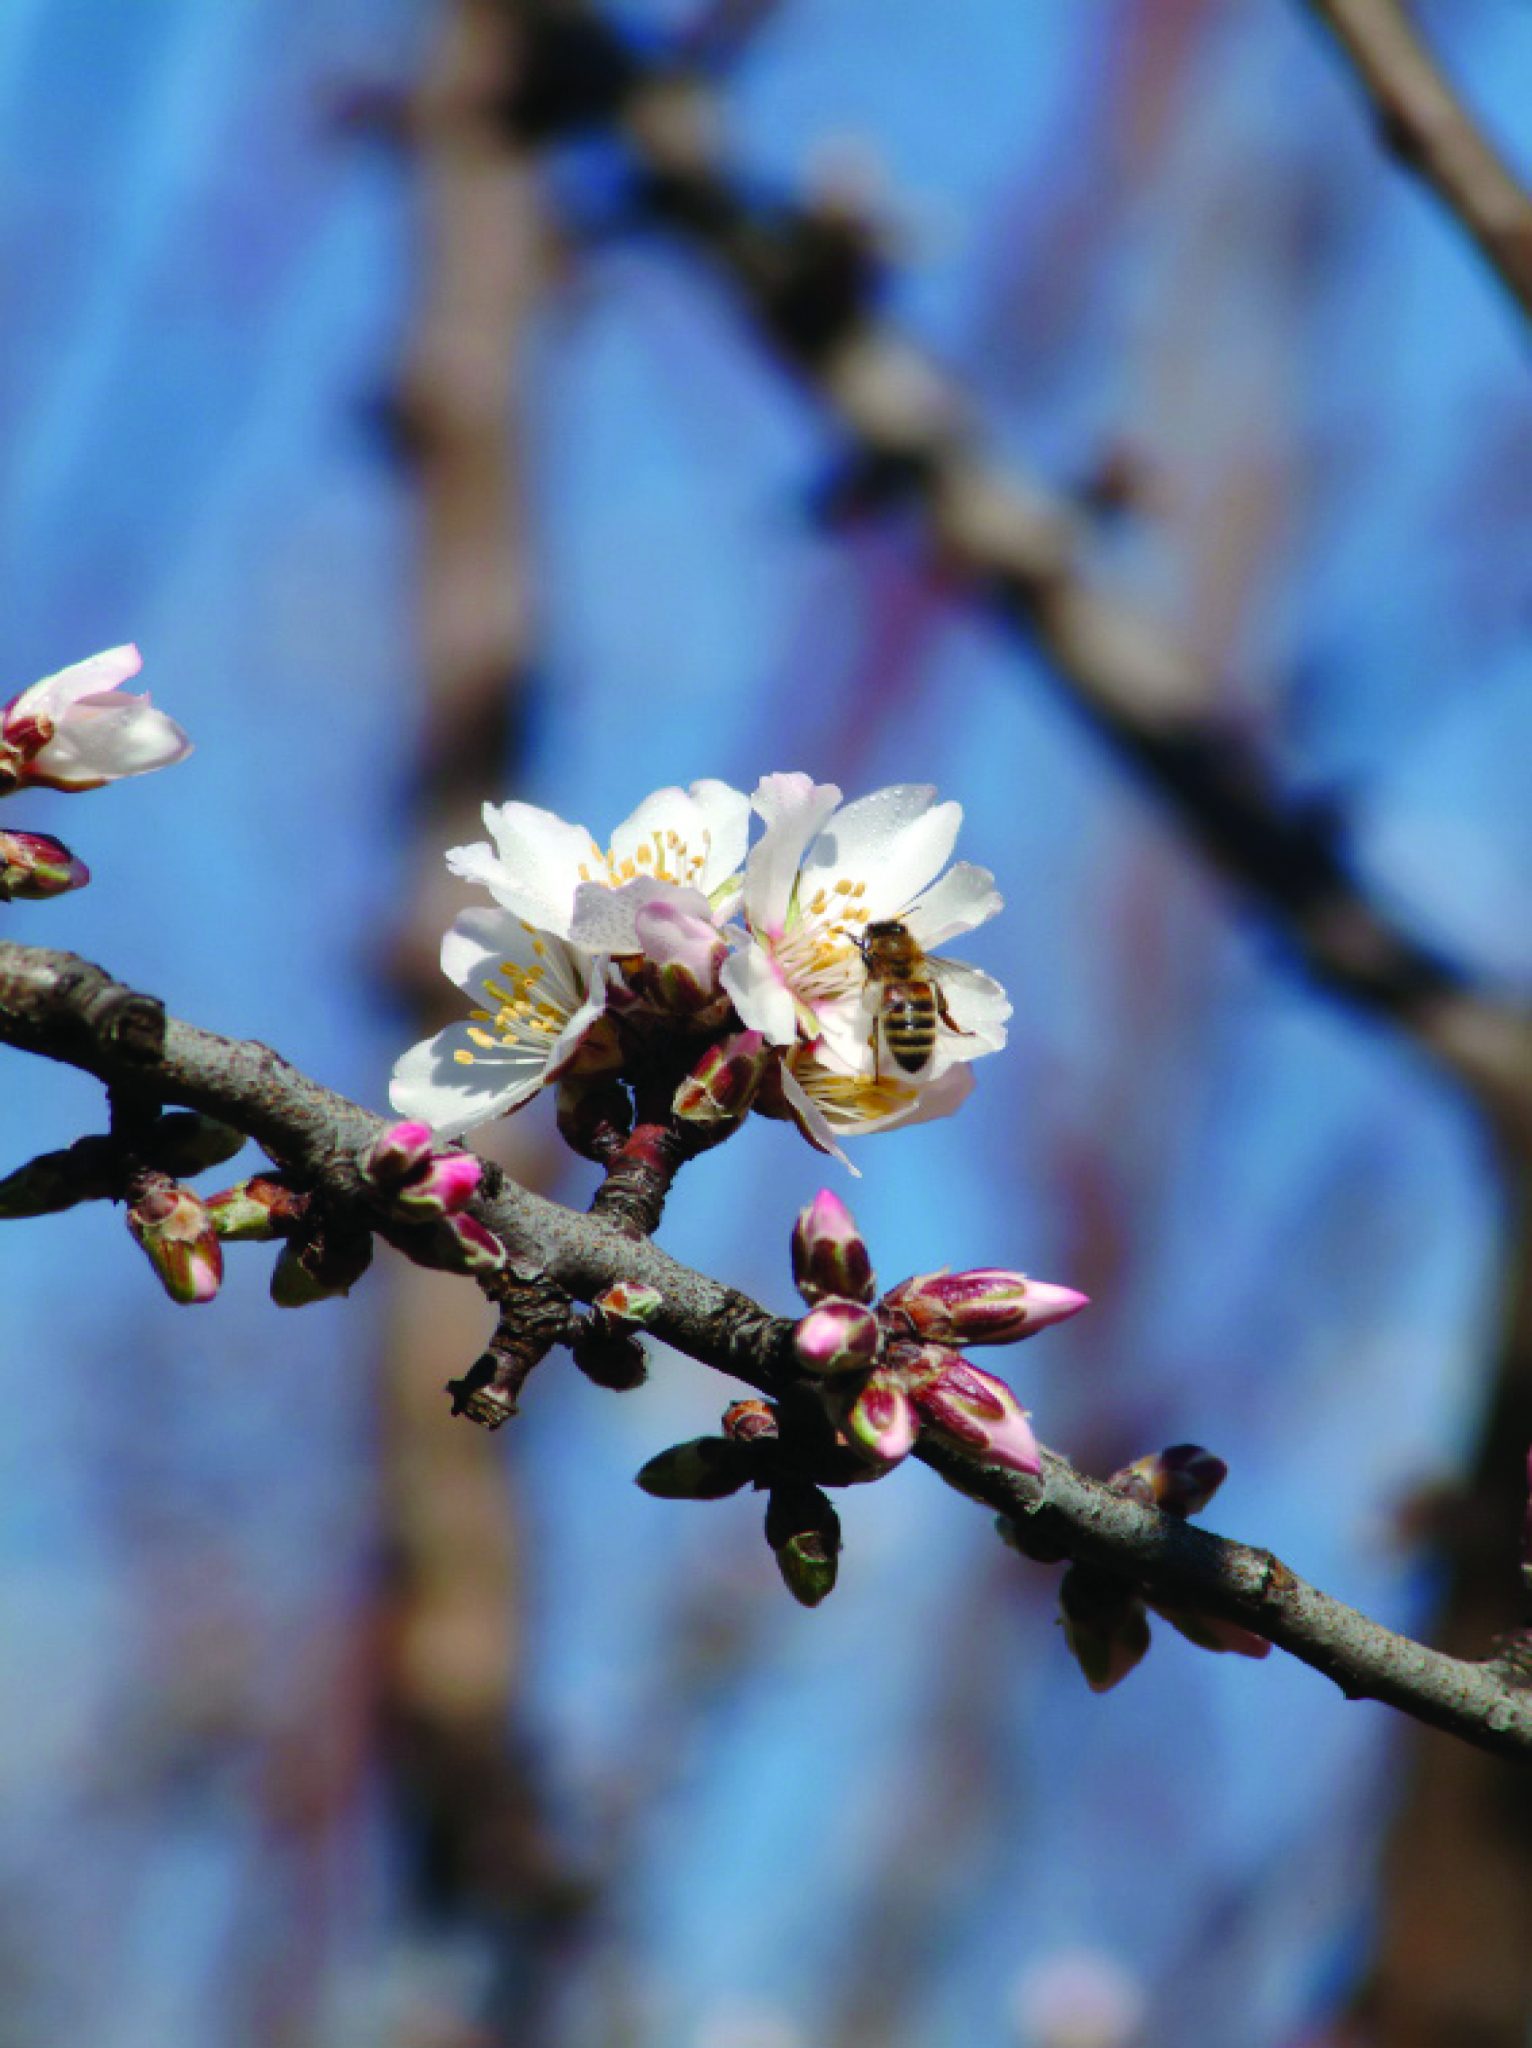 Honeybee on almond blossom